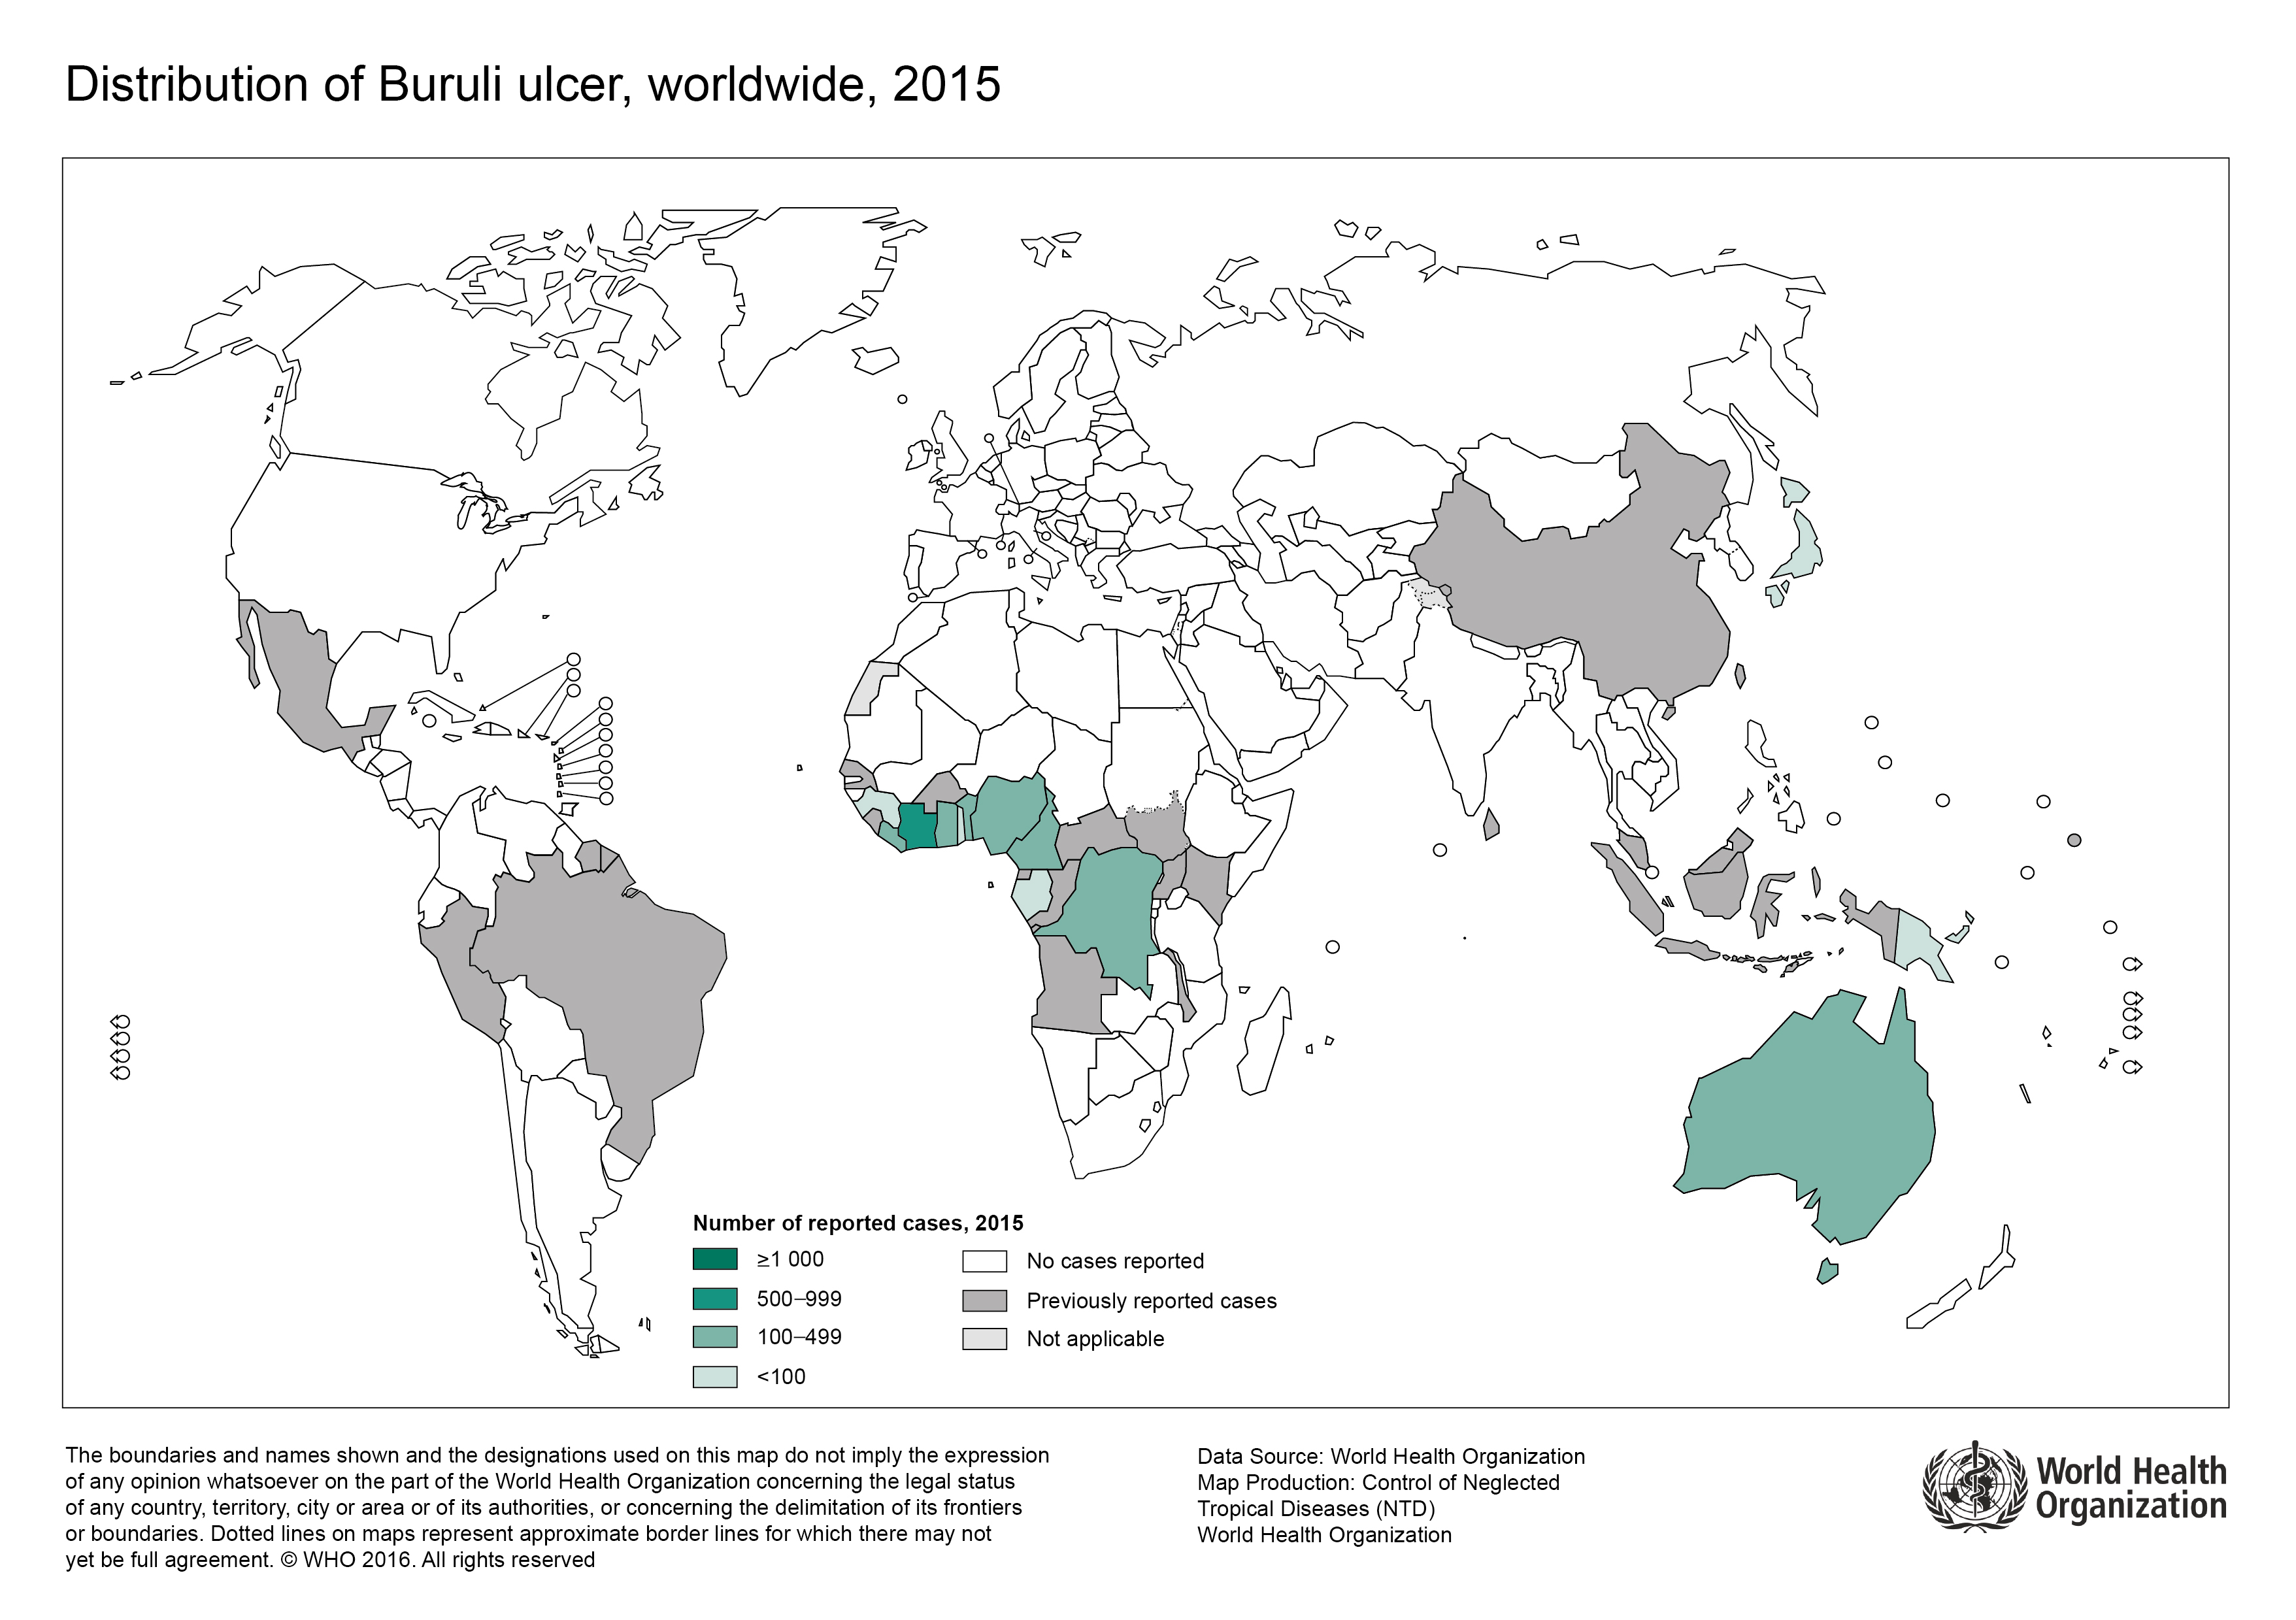 Buruli ulcer distribution in 2015 (WHO)